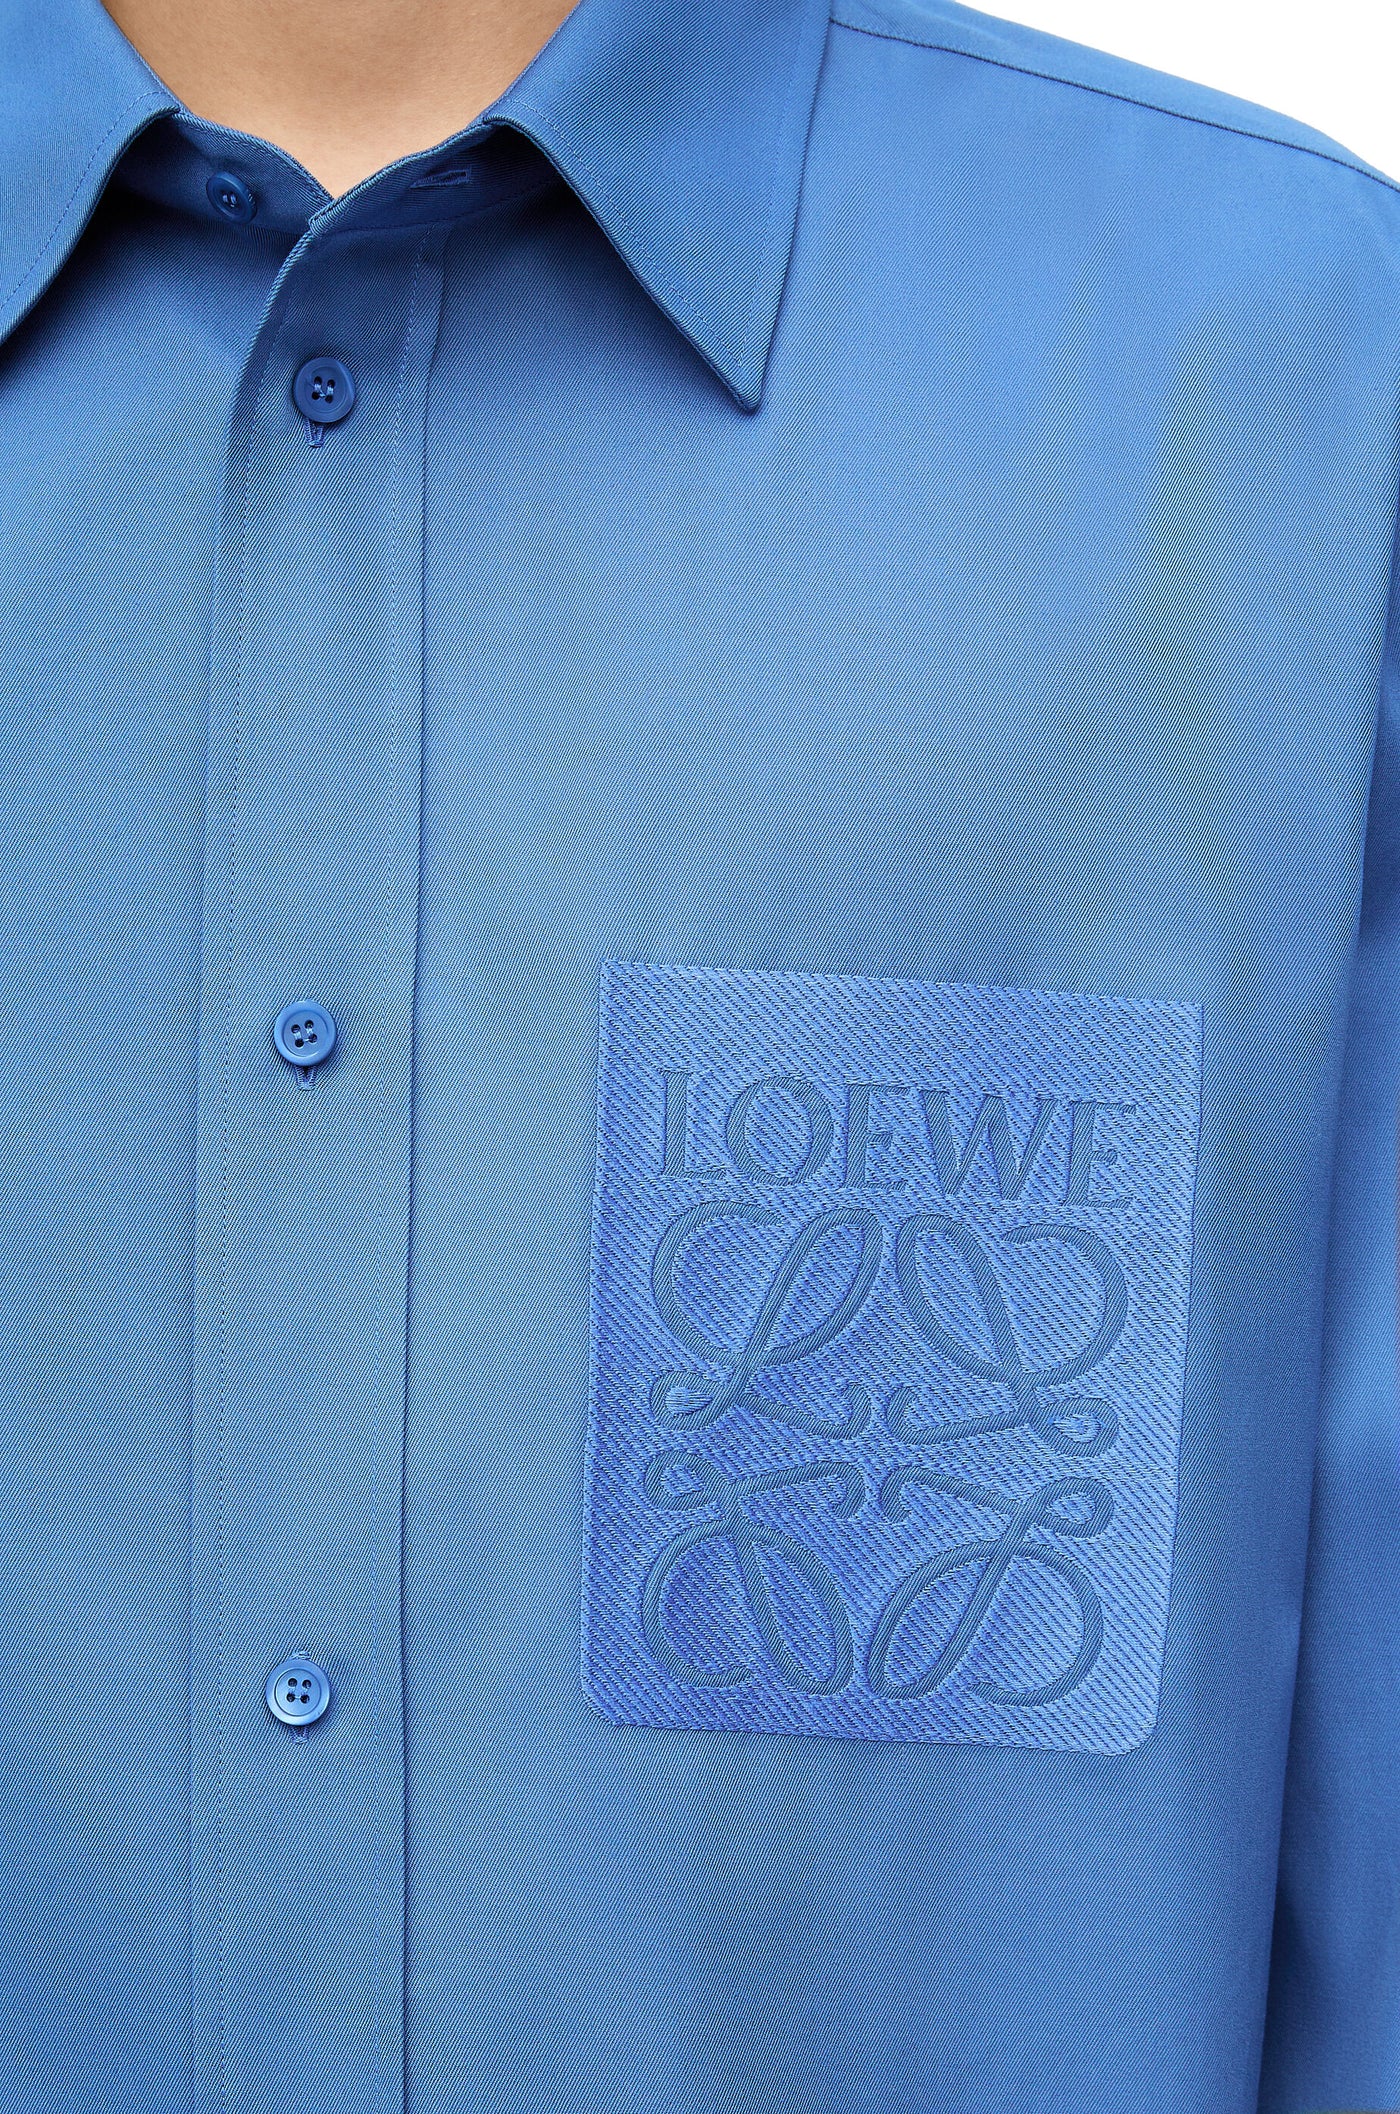 LOEWE chemise en coton à logo brodé